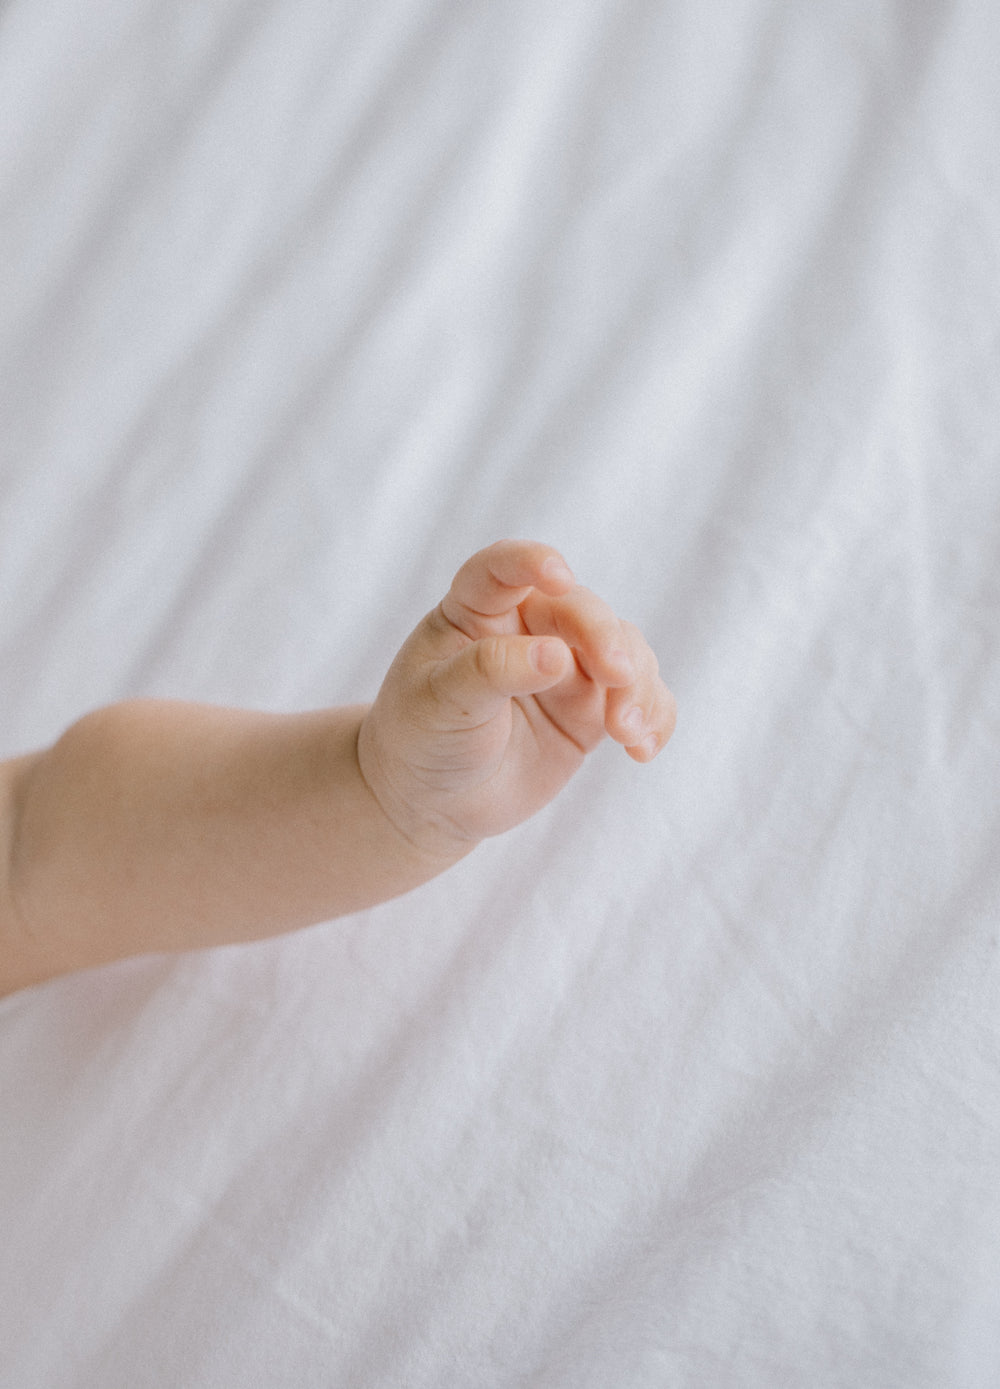 hand of newborn baby against white fabric